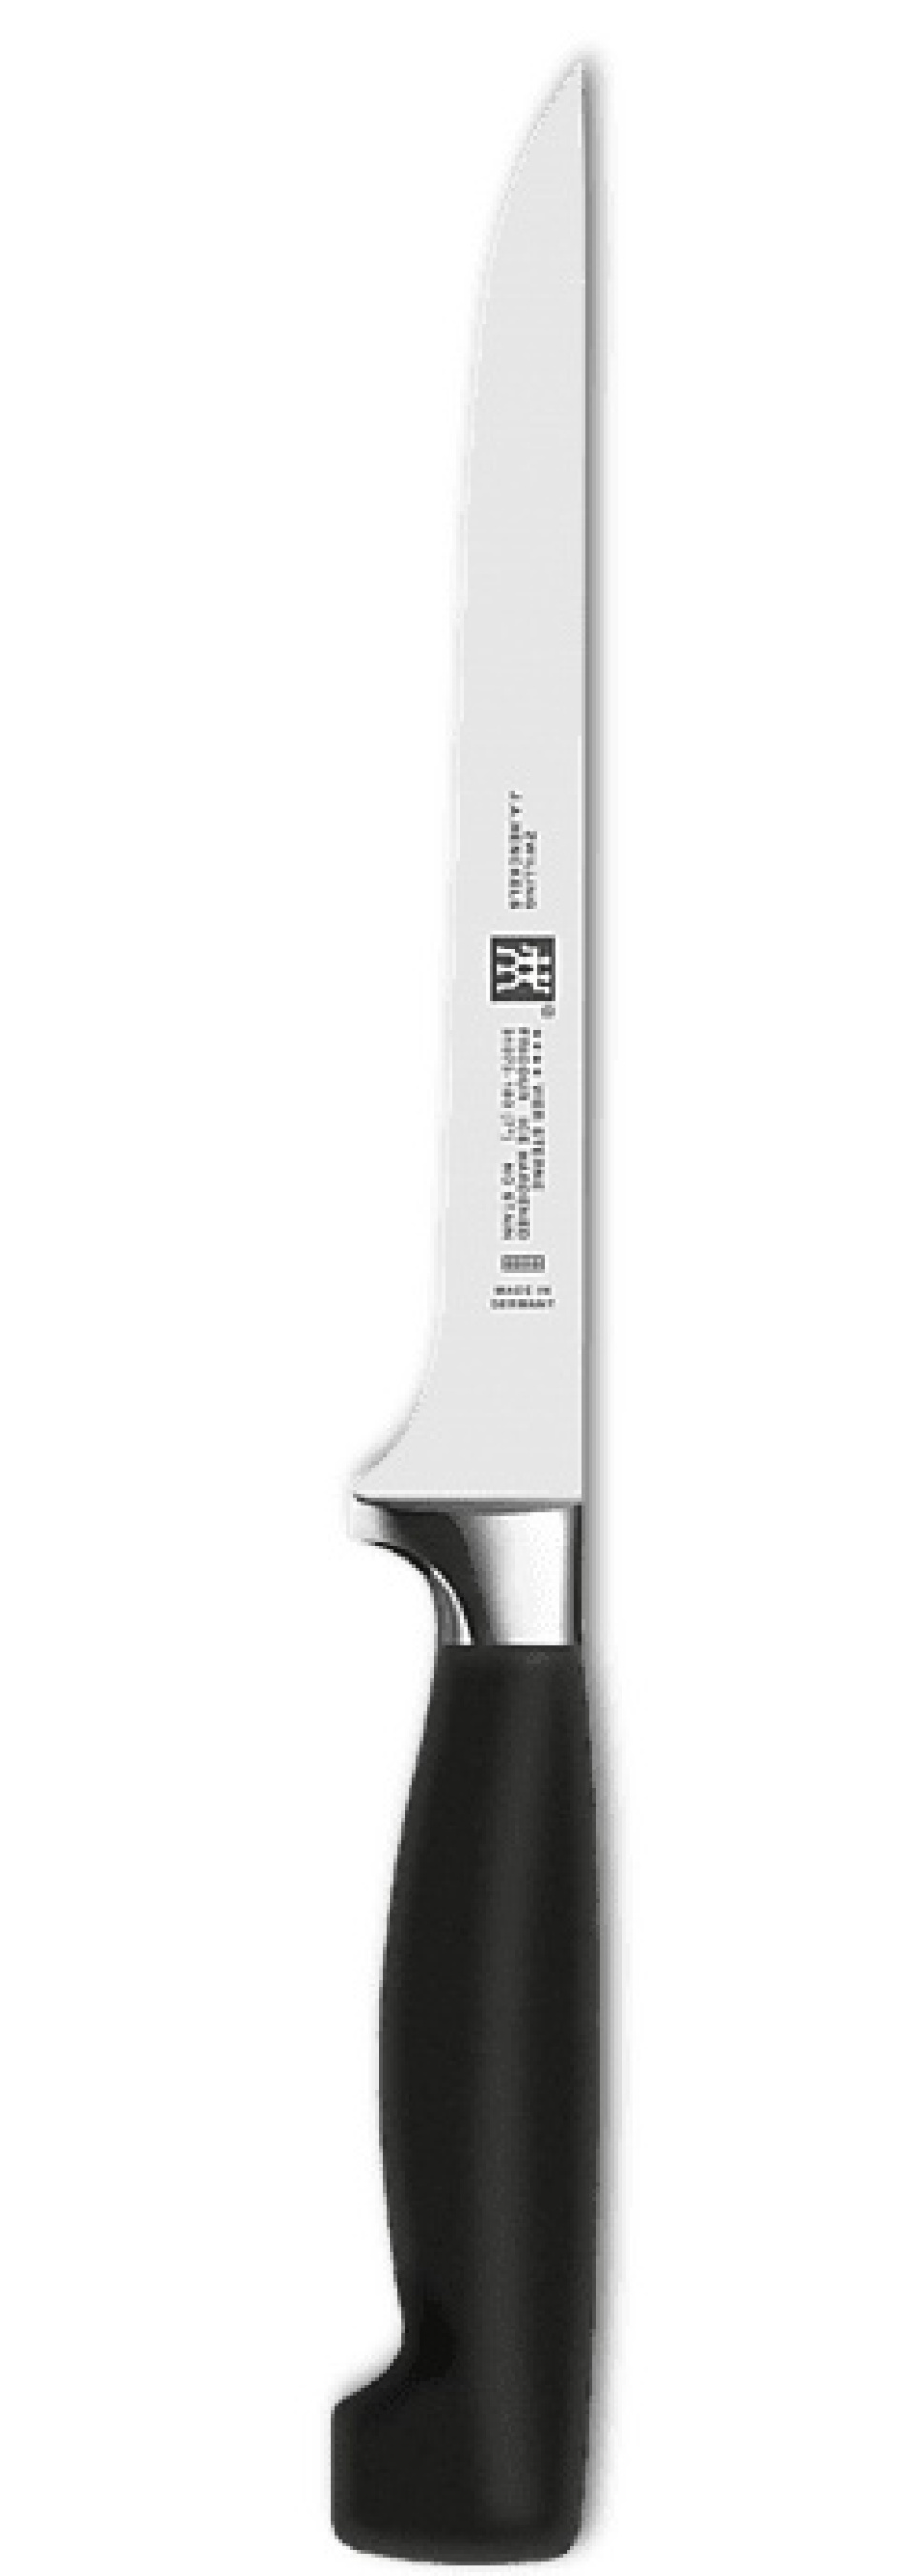 Firestjernet filetkniv, 18 cm i gruppen Madlavning / Køkkenknive / Filet knive hos The Kitchen Lab (1418-12870)